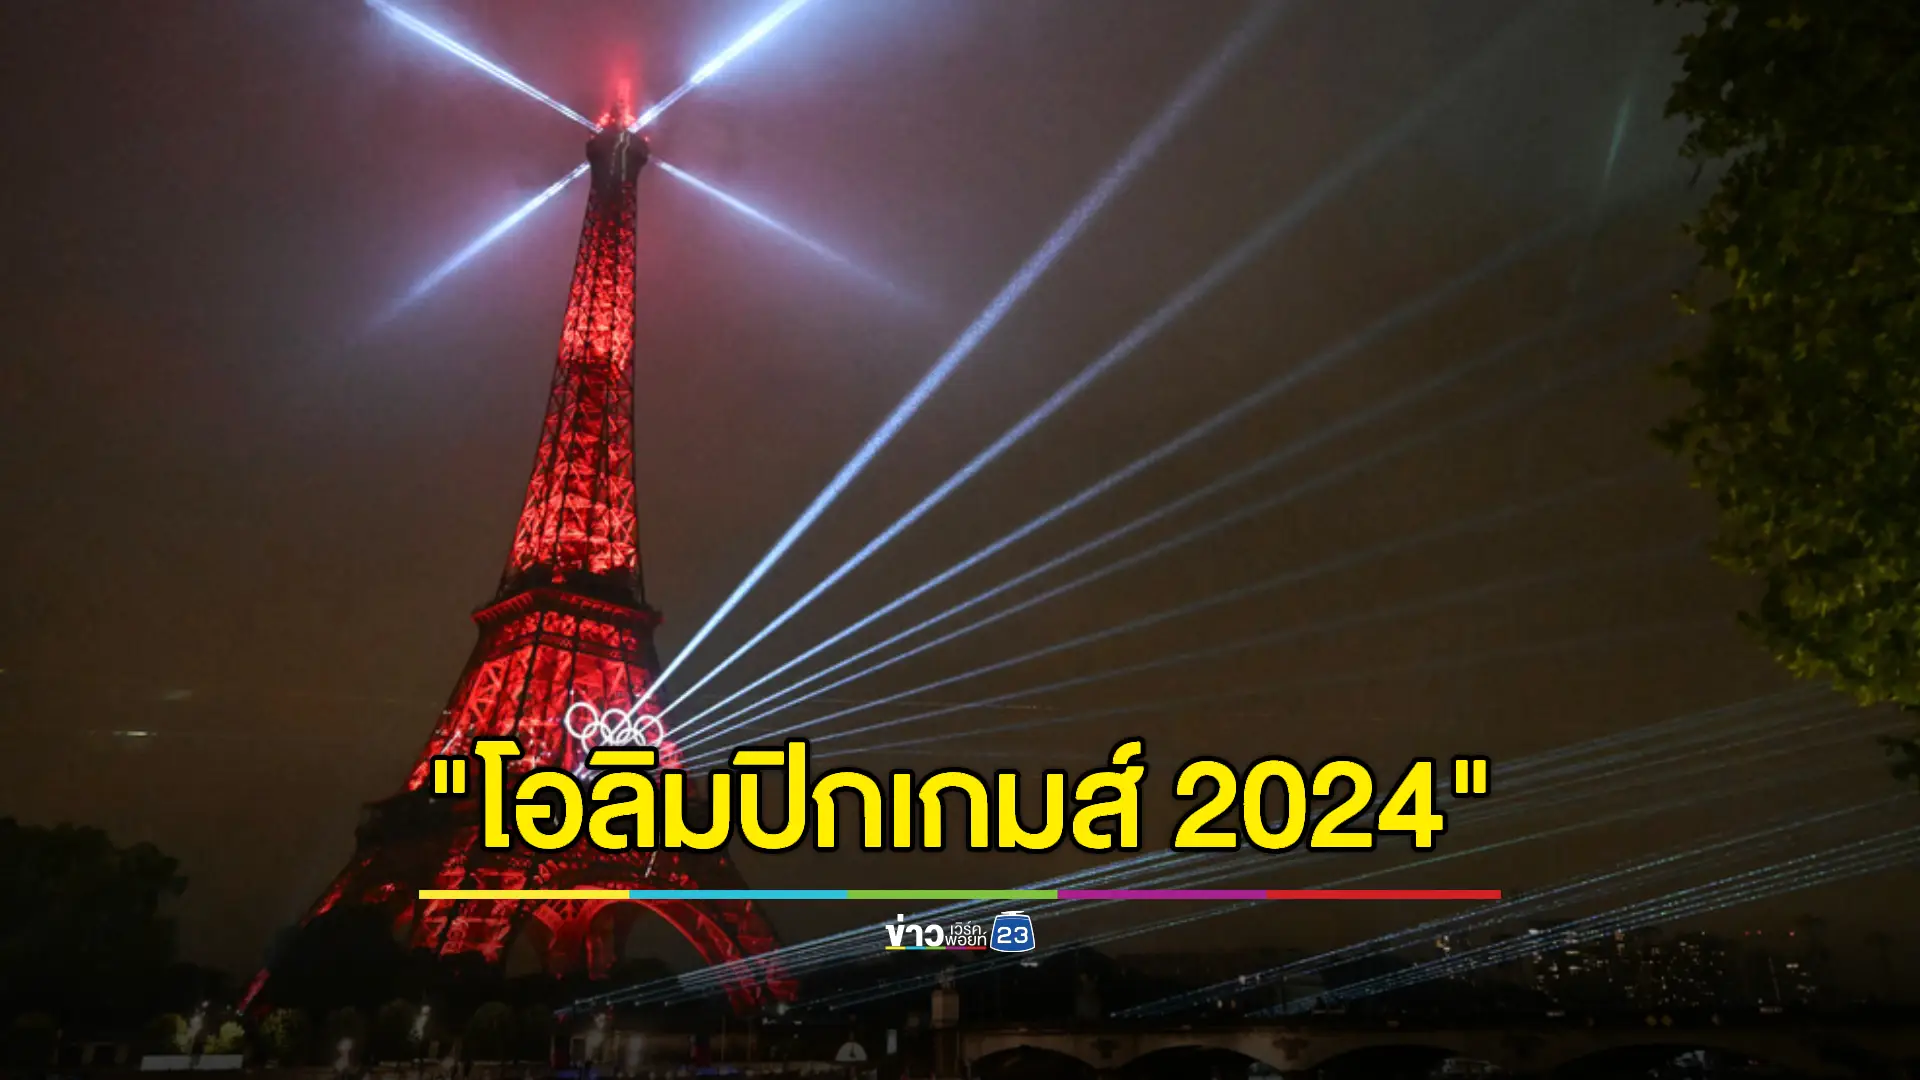 พิธีเปิดโอลิมปิก 2024 เริ่มต้นอย่างเป็นทางการ ขบวนเรือนักกีฬาทั้งหมดล่องเรือผ่านสถานที่สำคัญๆของกรุงปารีส 